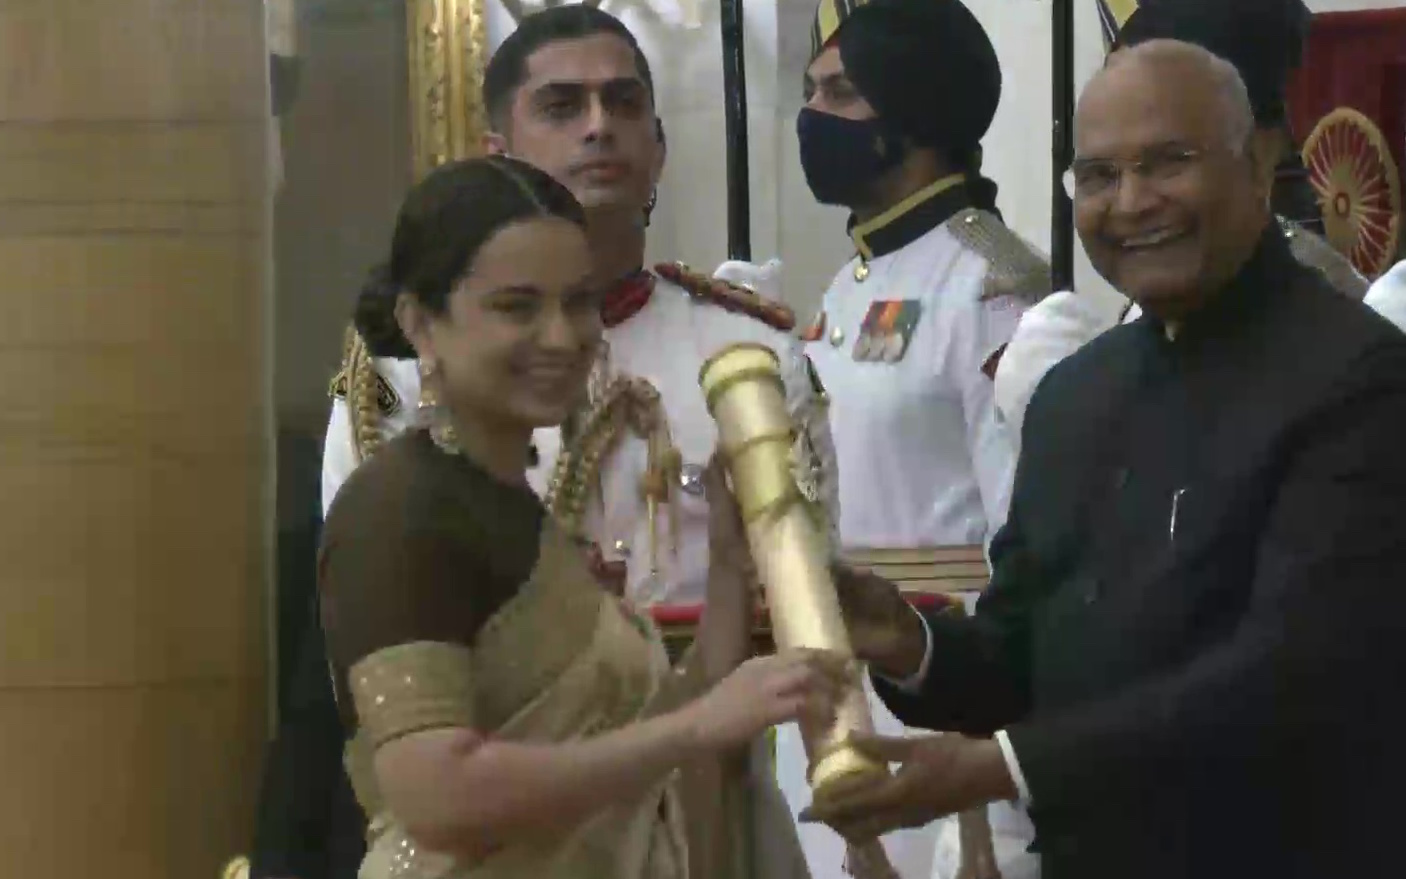 Kangana Ranaut conferred with Padma Shri Award